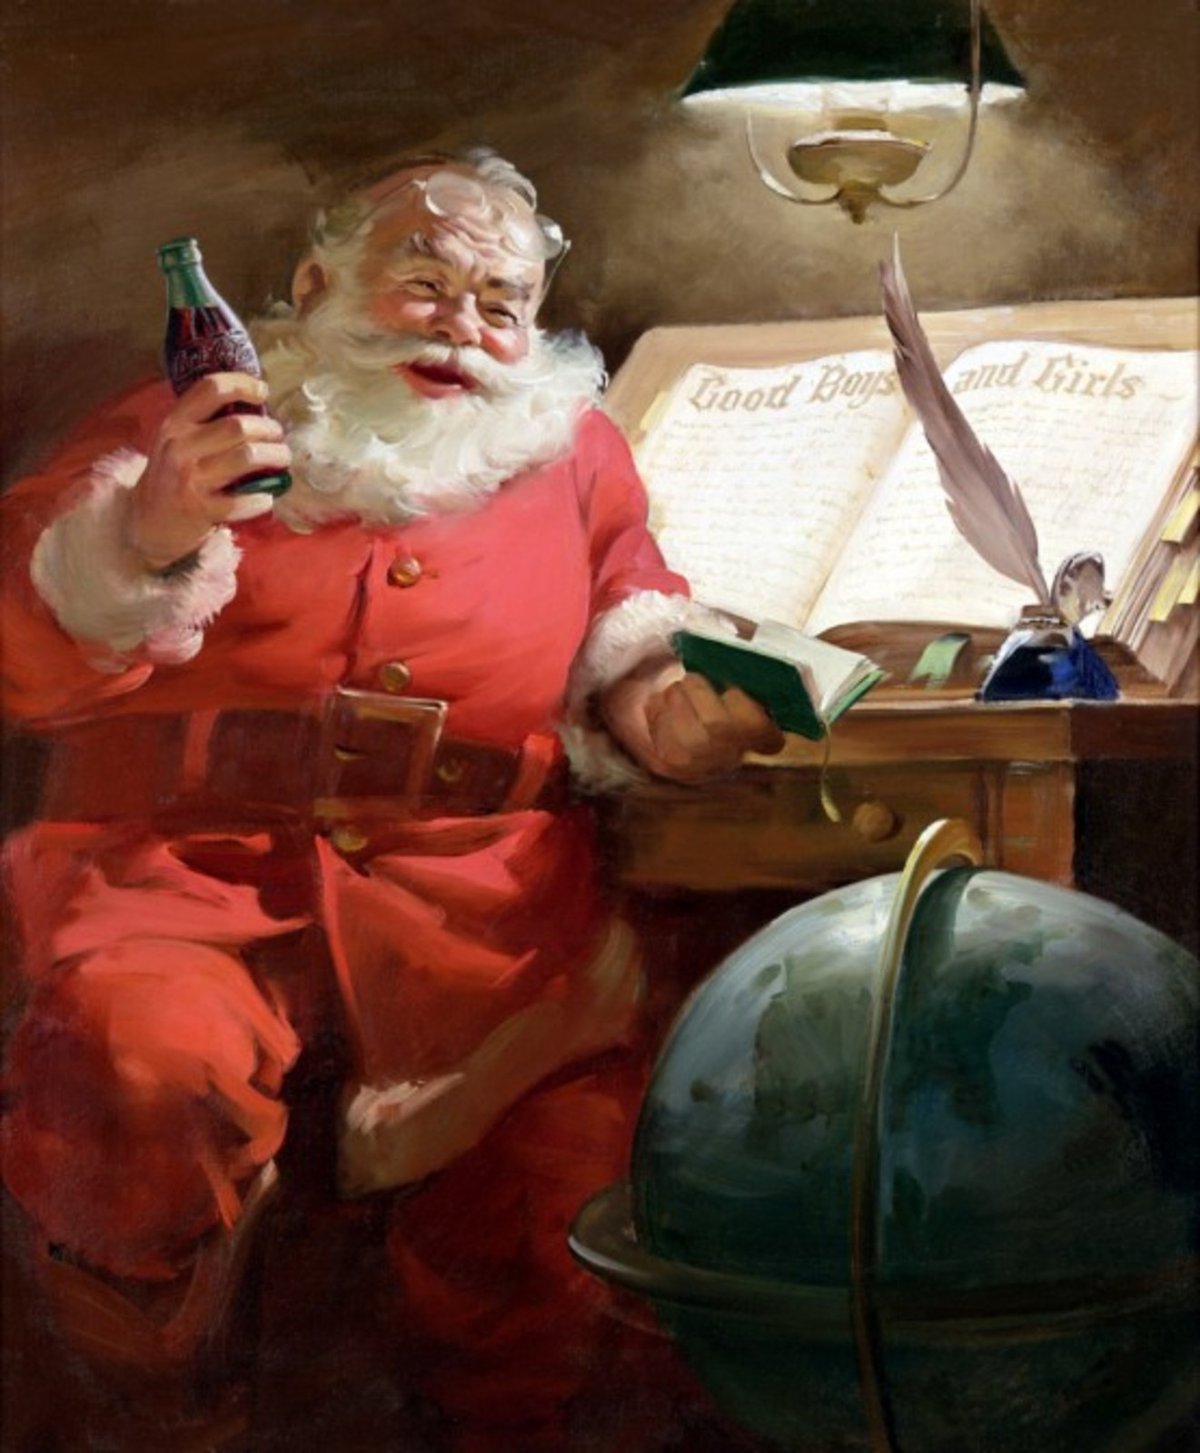 Pro řadu lidí je Santa Claus symbolem komerce.